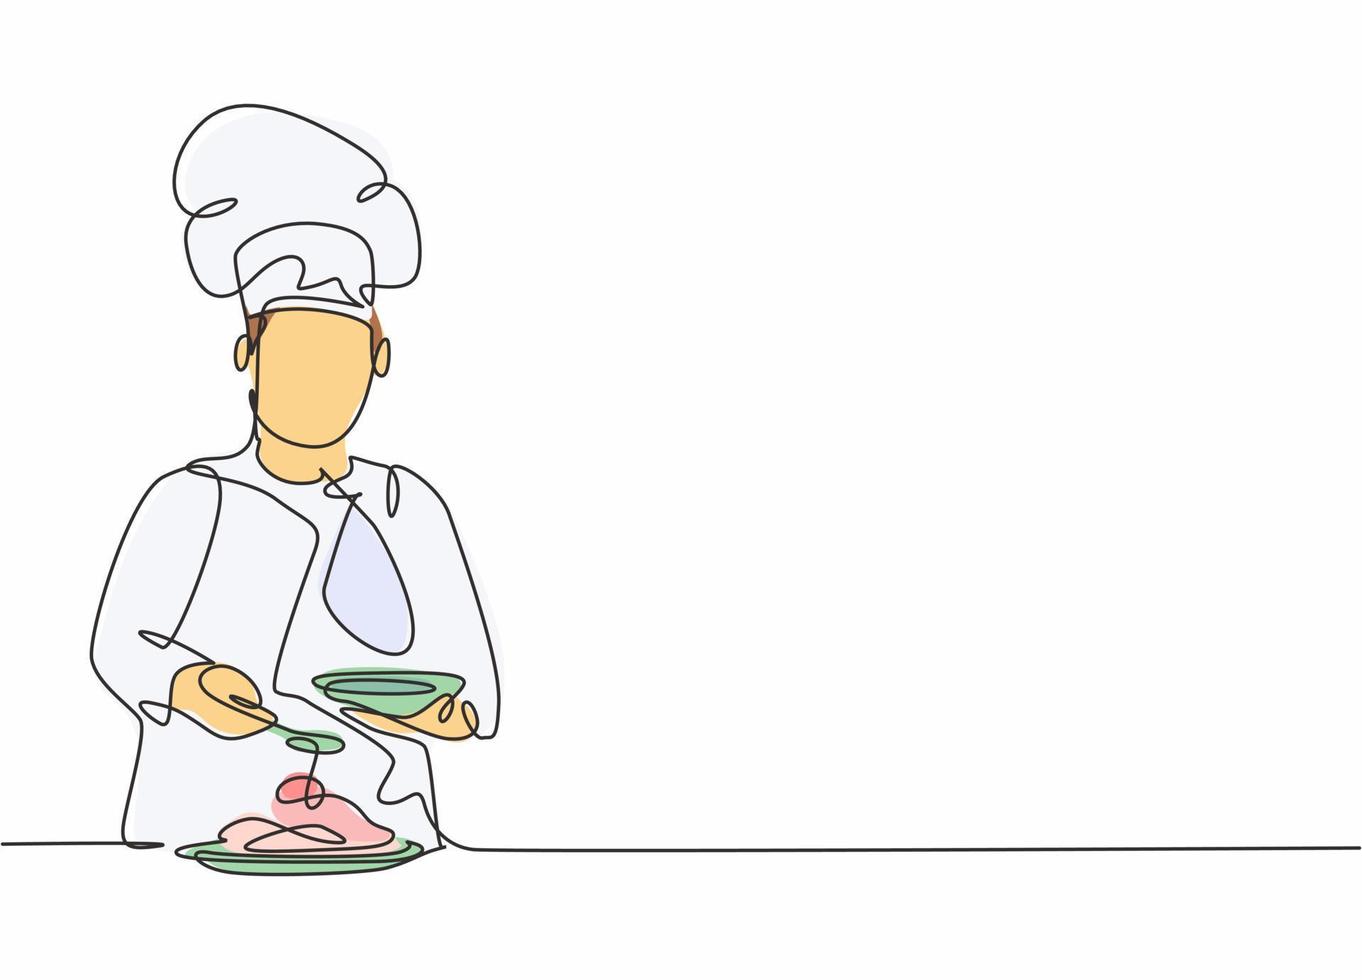 disegno a linea continua di un giovane chef maschio felice che versa la salsa sul piatto principale da servire al cliente. preparare il concetto di cibo sano un disegno a tratteggio disegno vettoriale minimalismo illustrazione